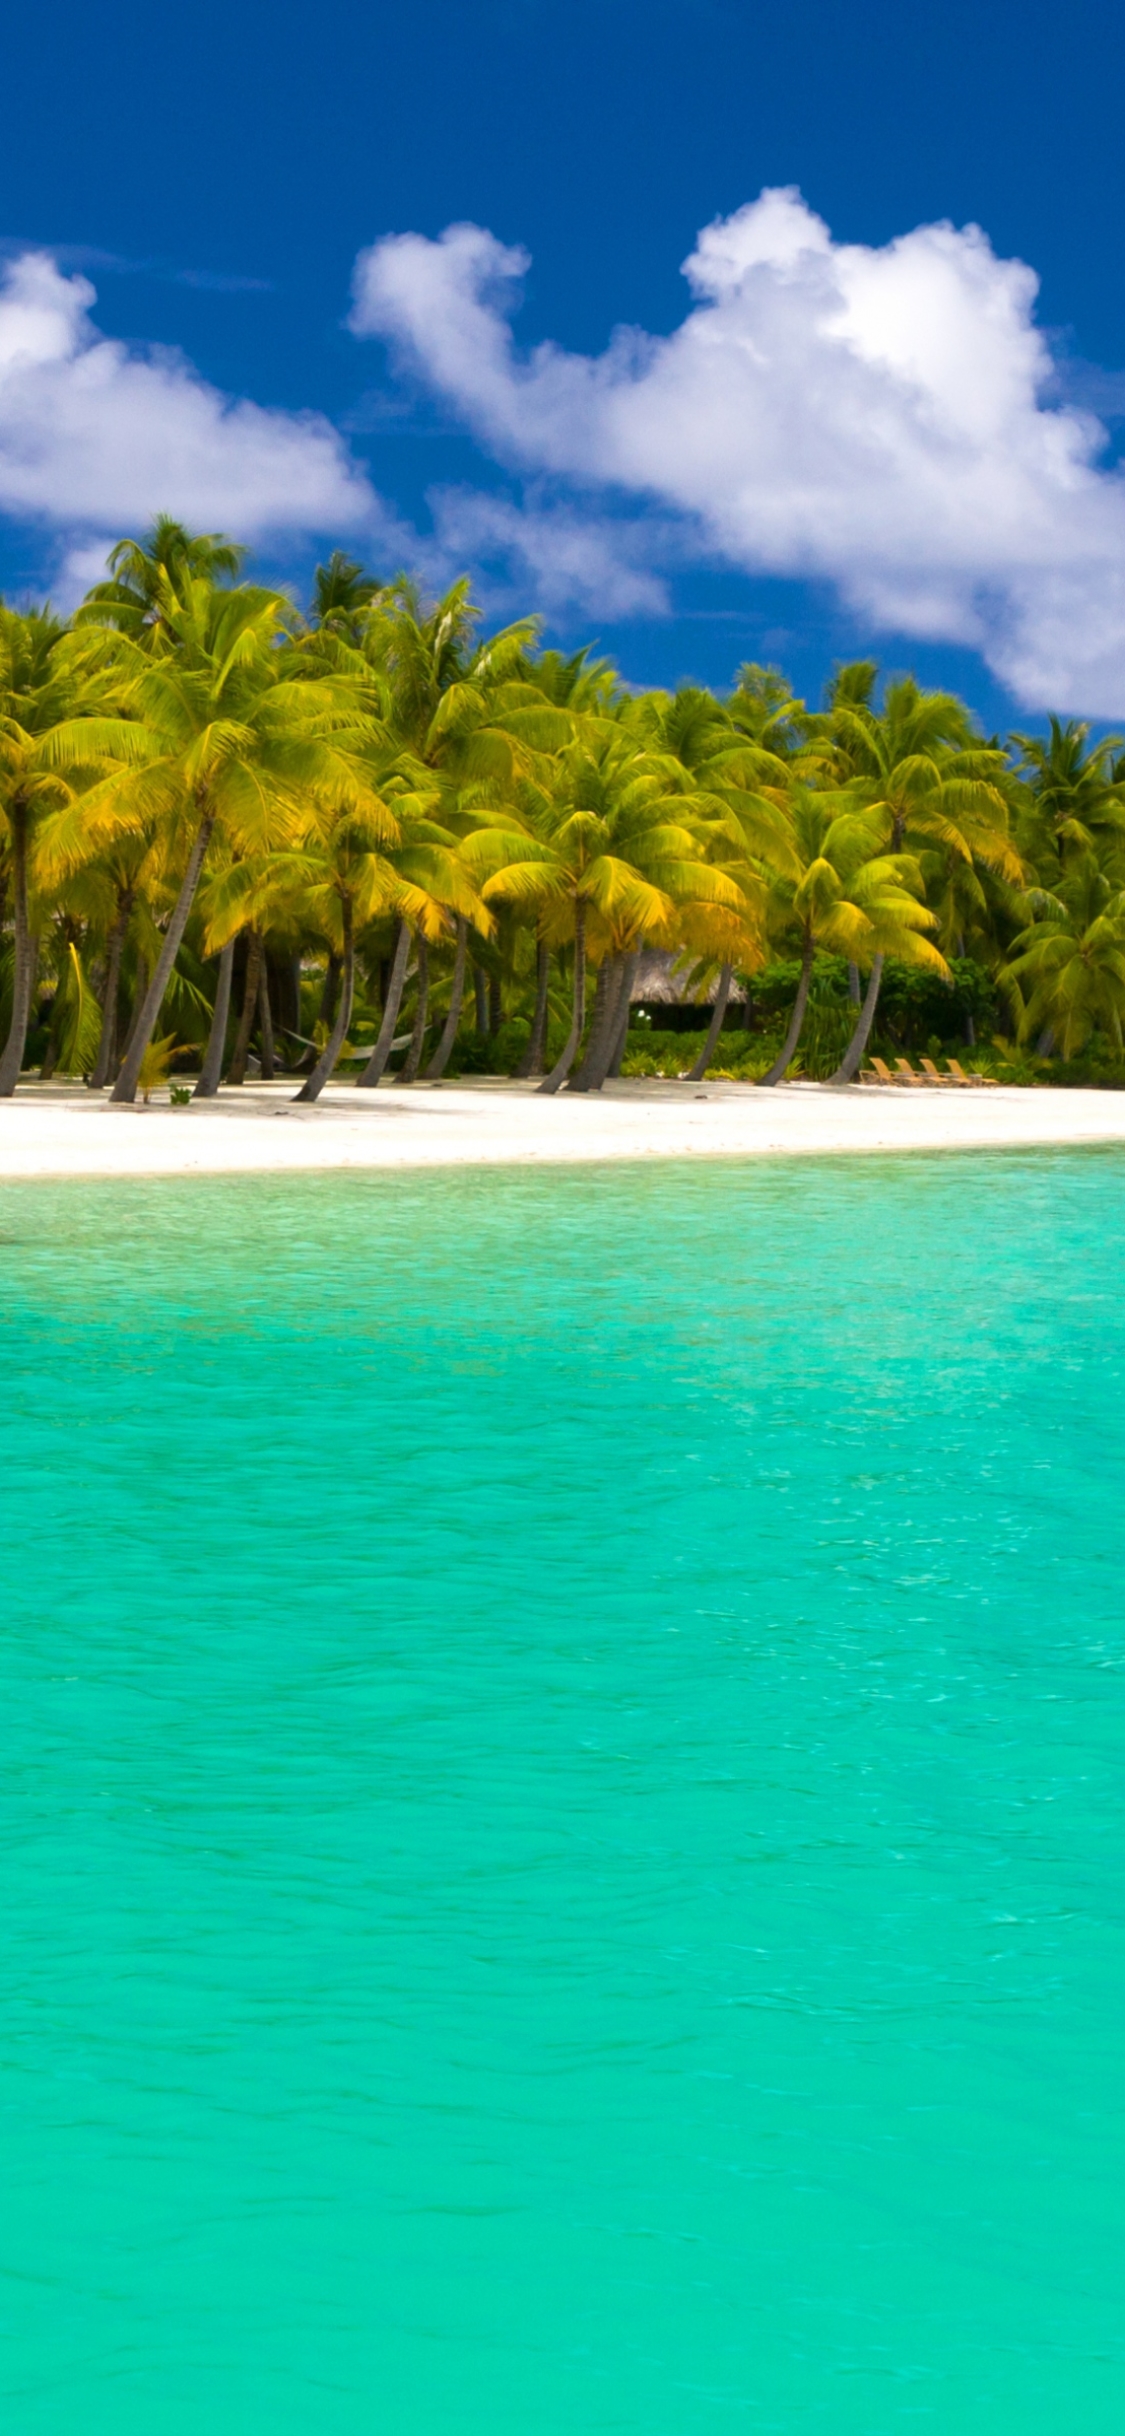 Descarga gratuita de fondo de pantalla para móvil de Mar, Playa, Océano, Fotografía, Maldivas, Palmera.